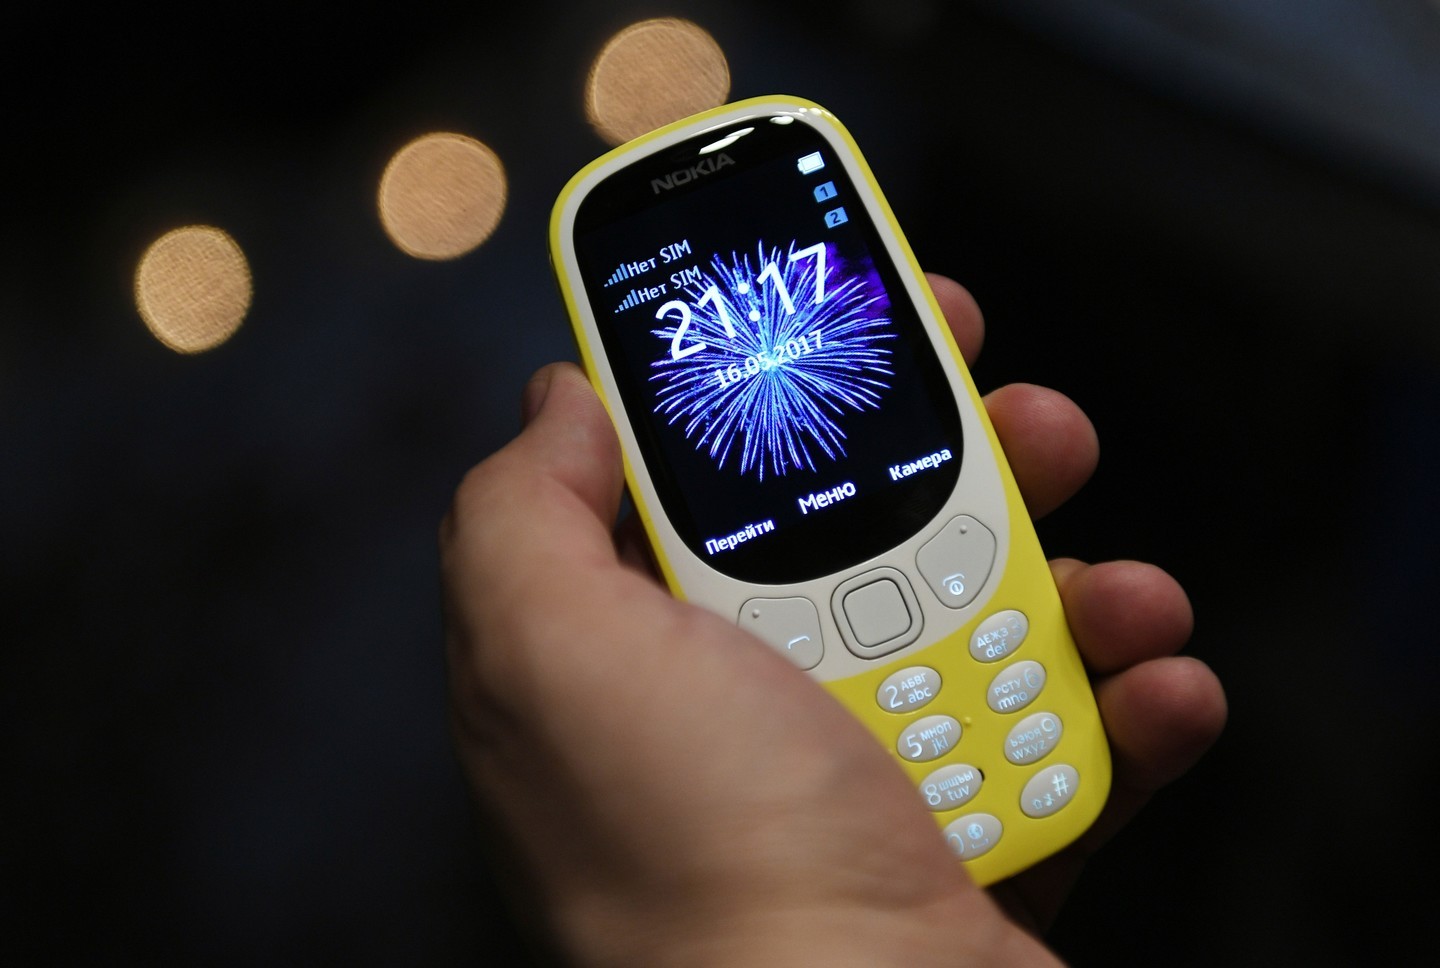 Обновленная версия классической модели мобильного телефона Nokia 3310.
Фото: &copy; РИА Новости/Максим Блинов